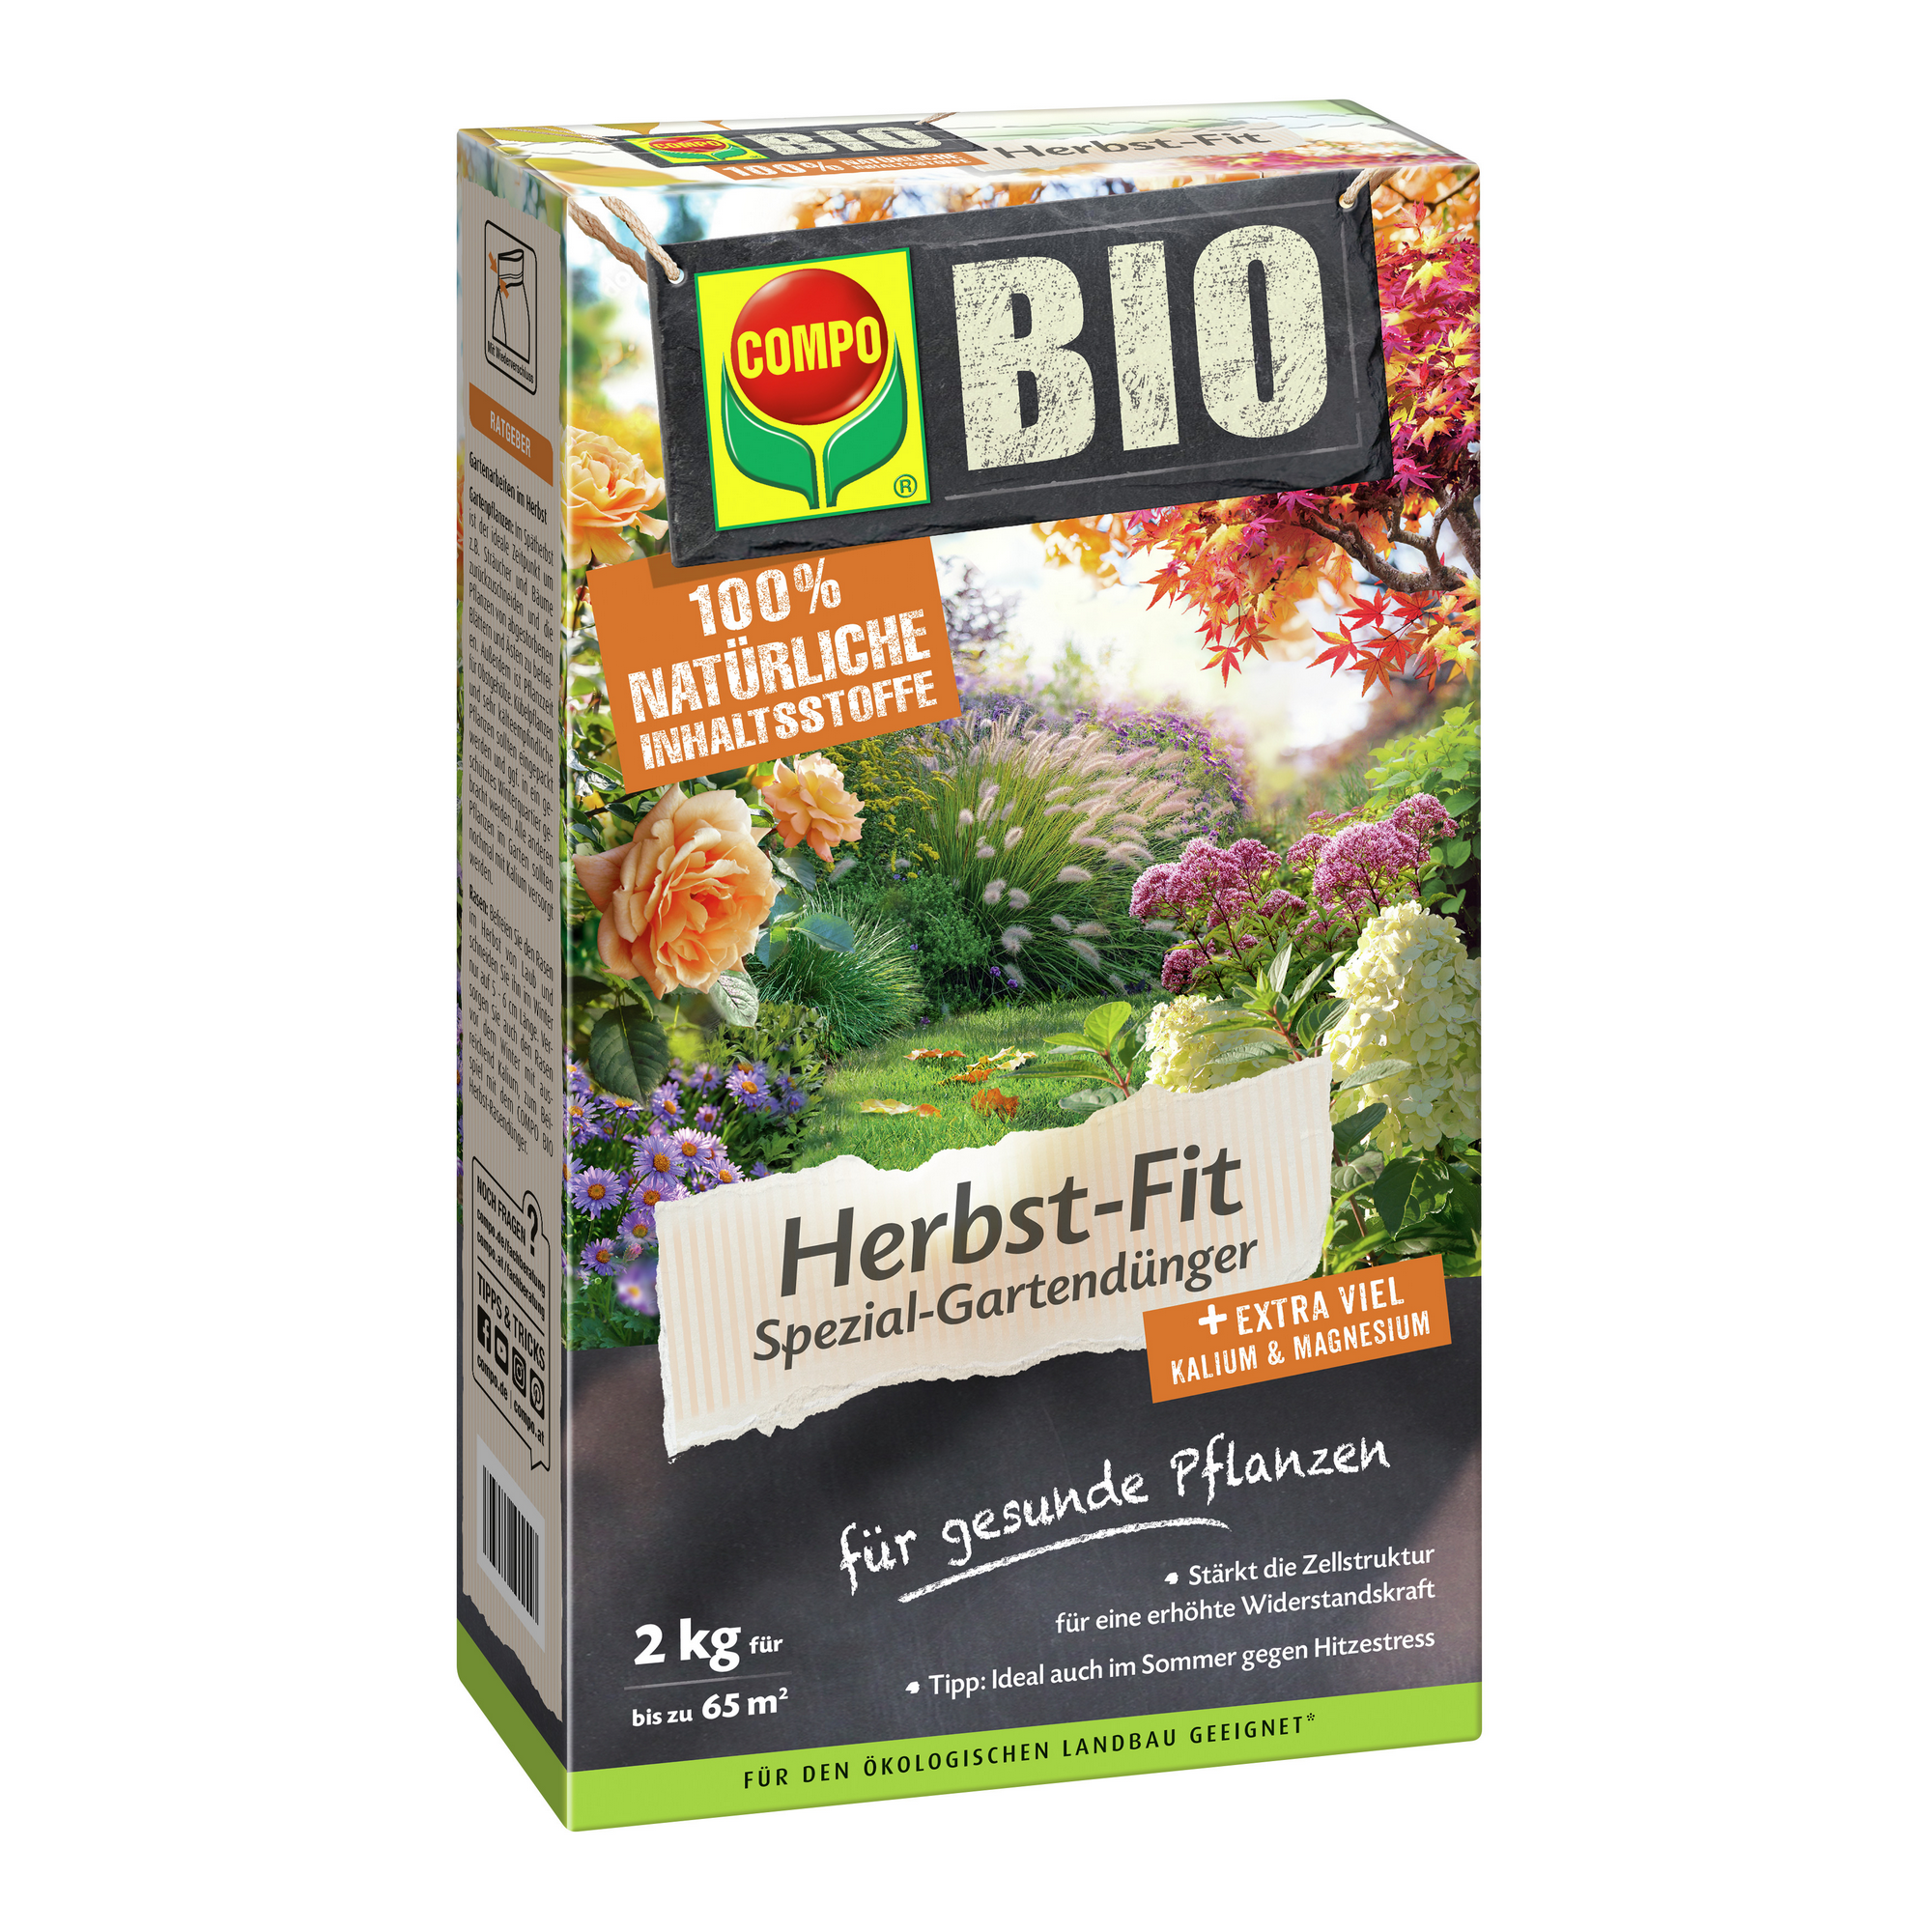 Spezial-Gartendünger 'BIO Herbst-Fit' 2 kg für bis zu 65 m² + product picture